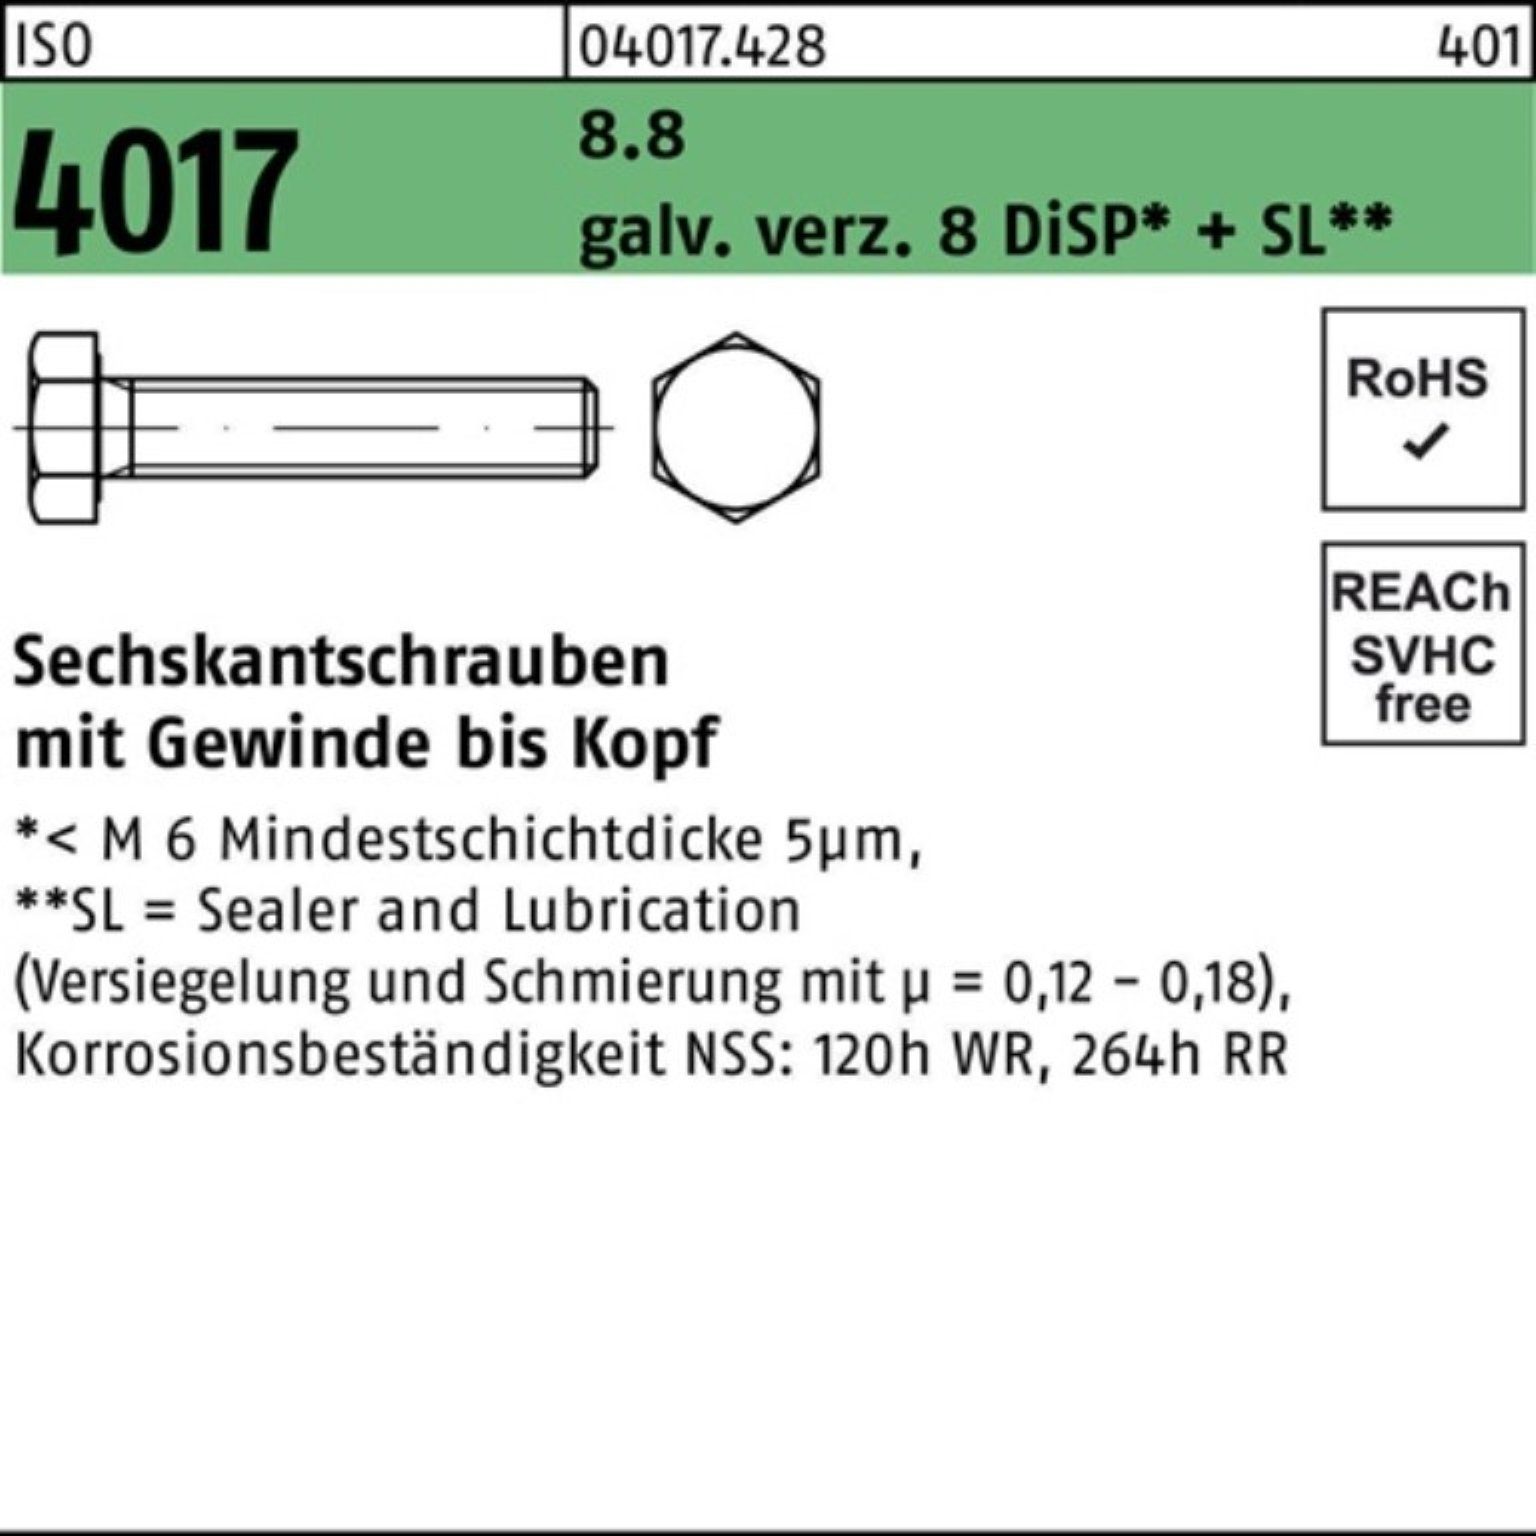 ISO M5x Sechskantschraube 8.8 galv.verz. Pack 8 10 VG 500er Sechskantschraube Bufab 4017 DiSP+